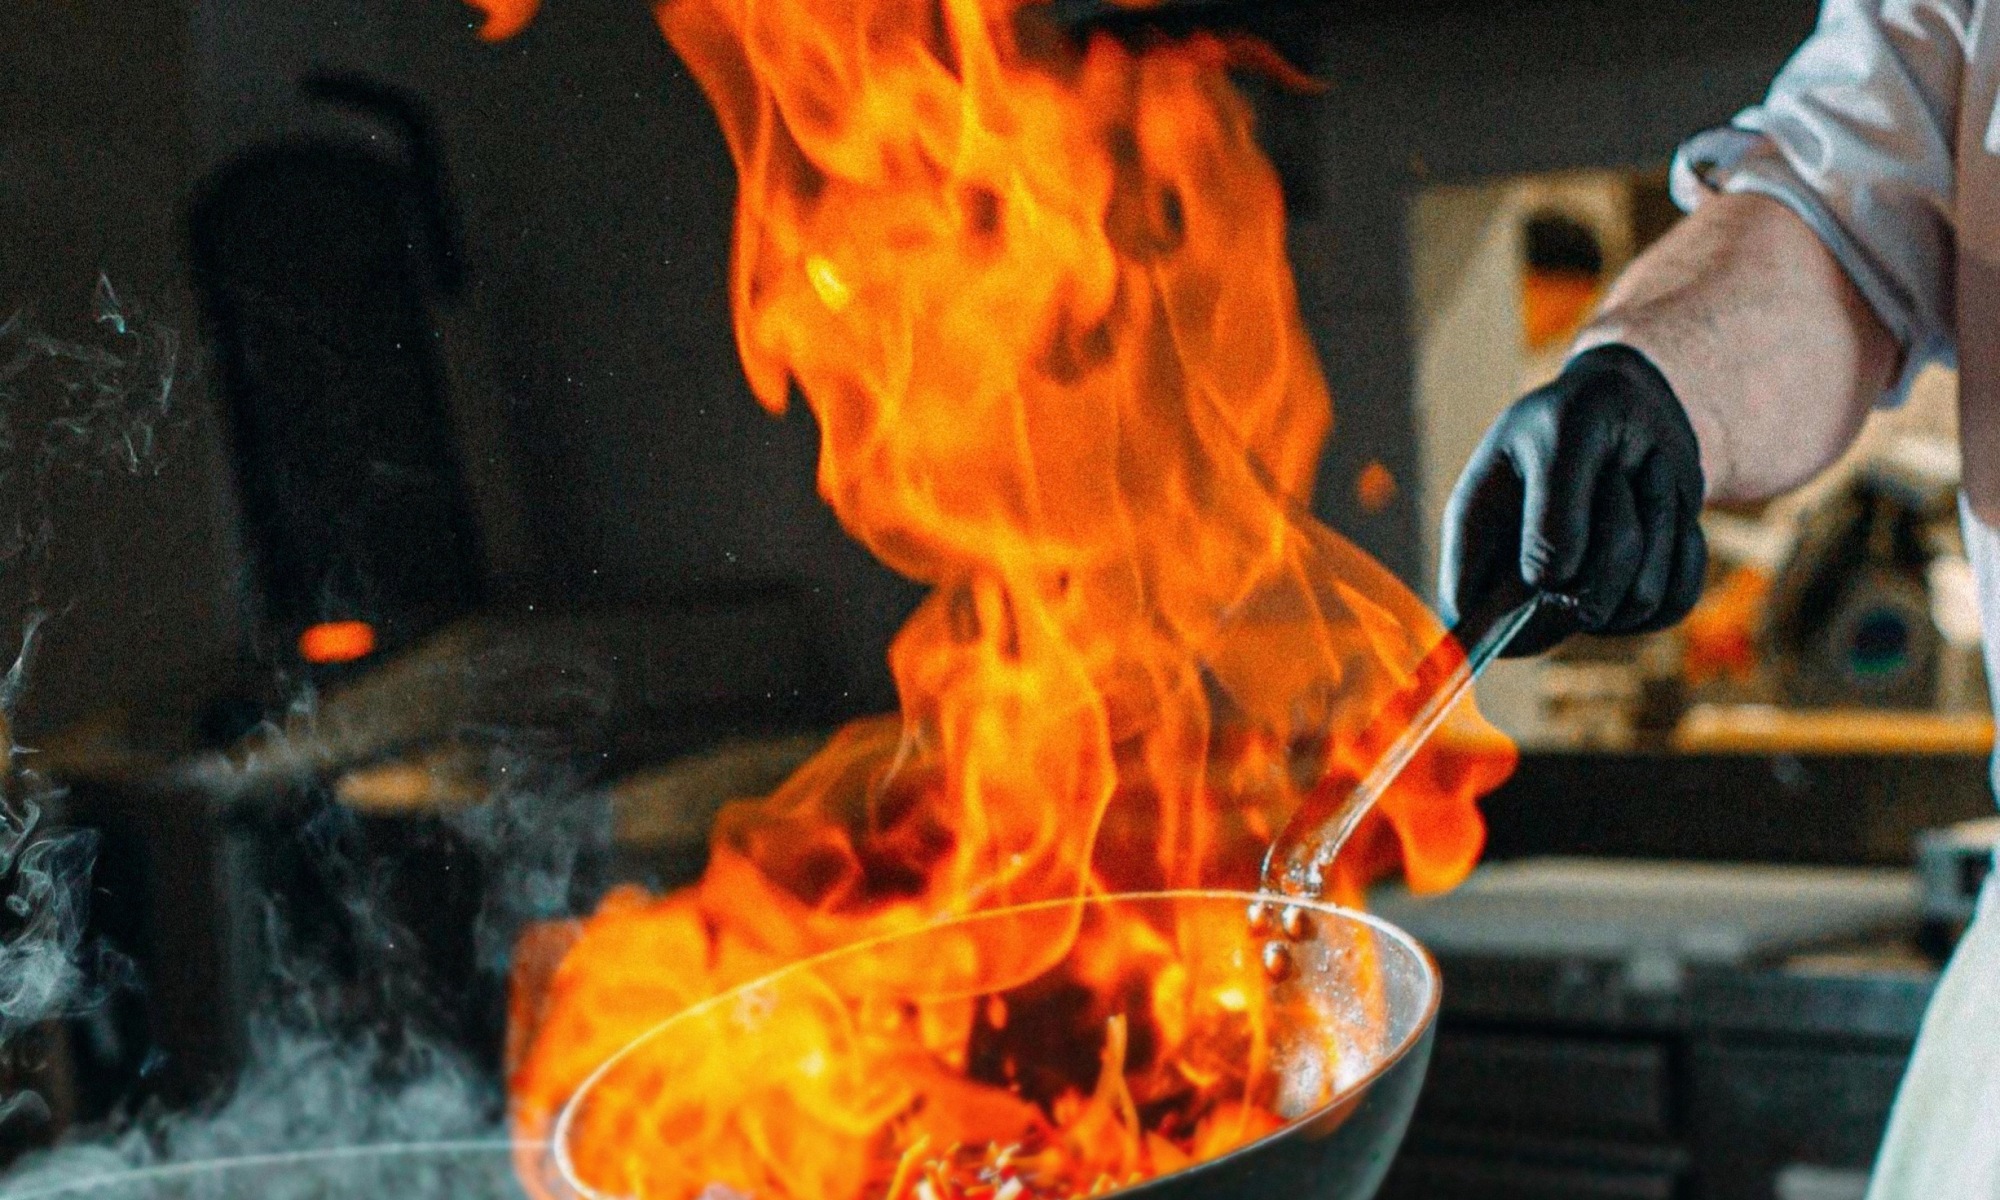 Un chef tient un wok enflammé